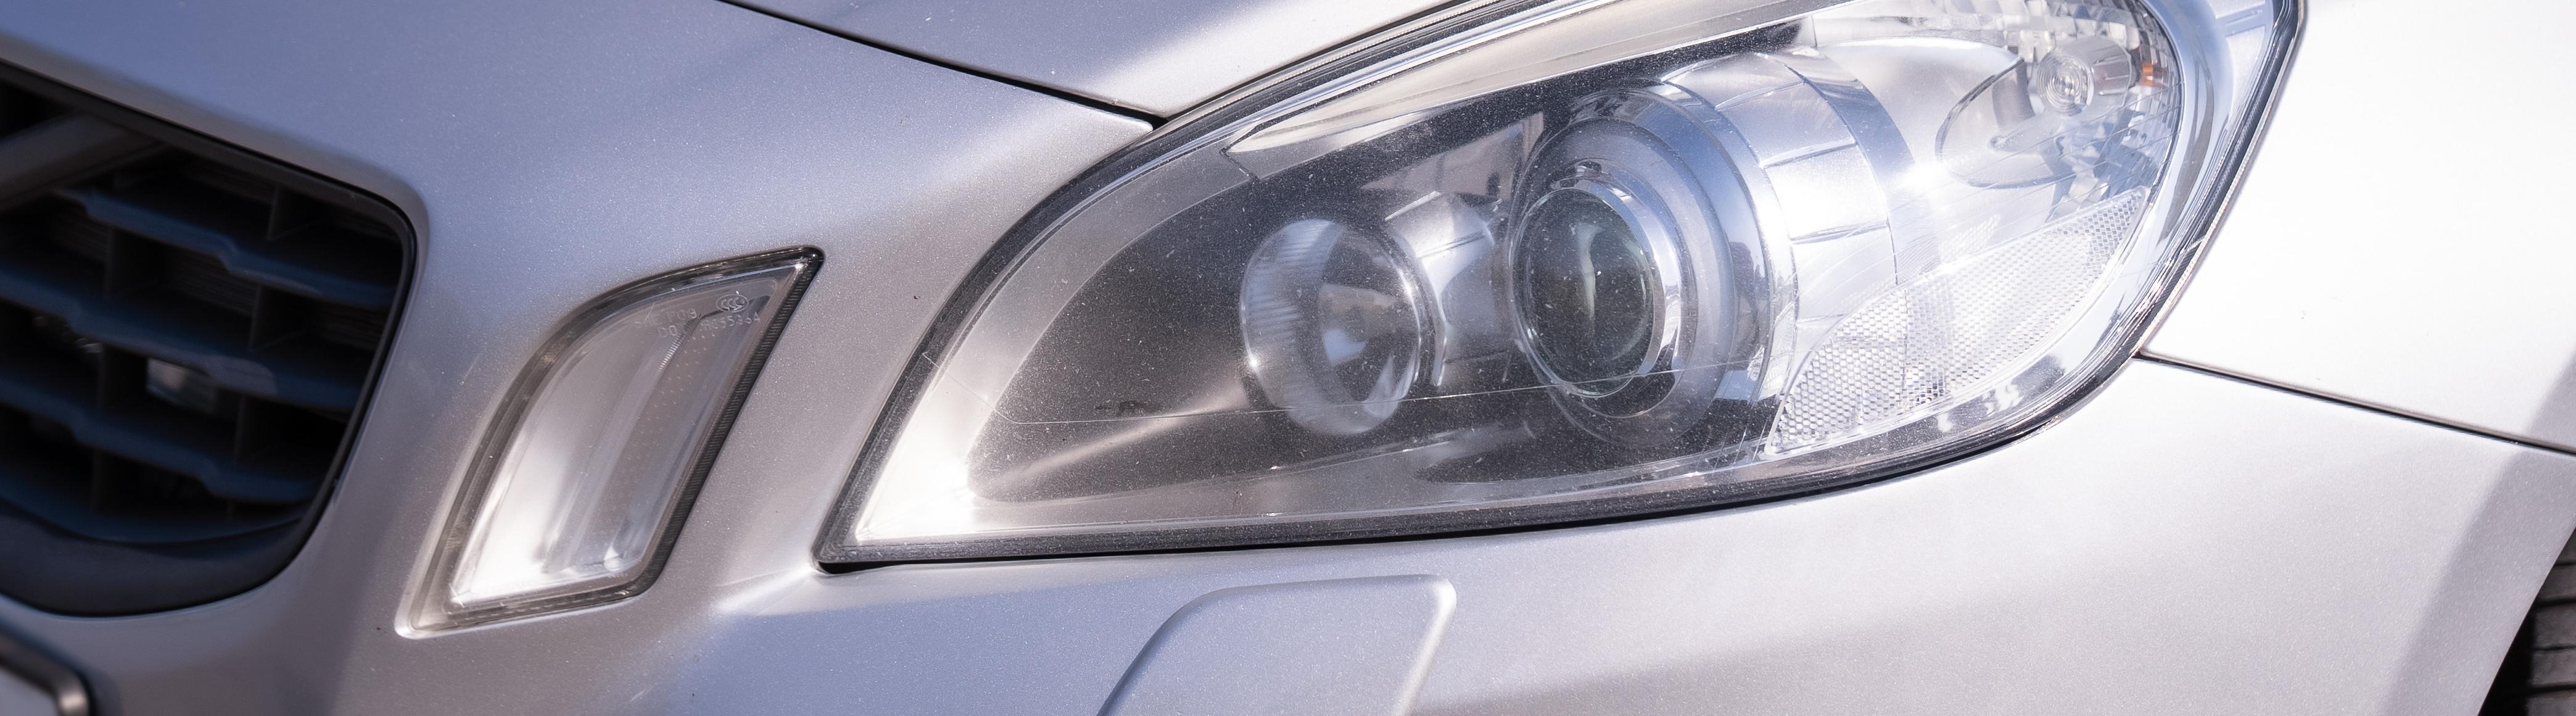 Detaljbild på strålkastare på en grå bil